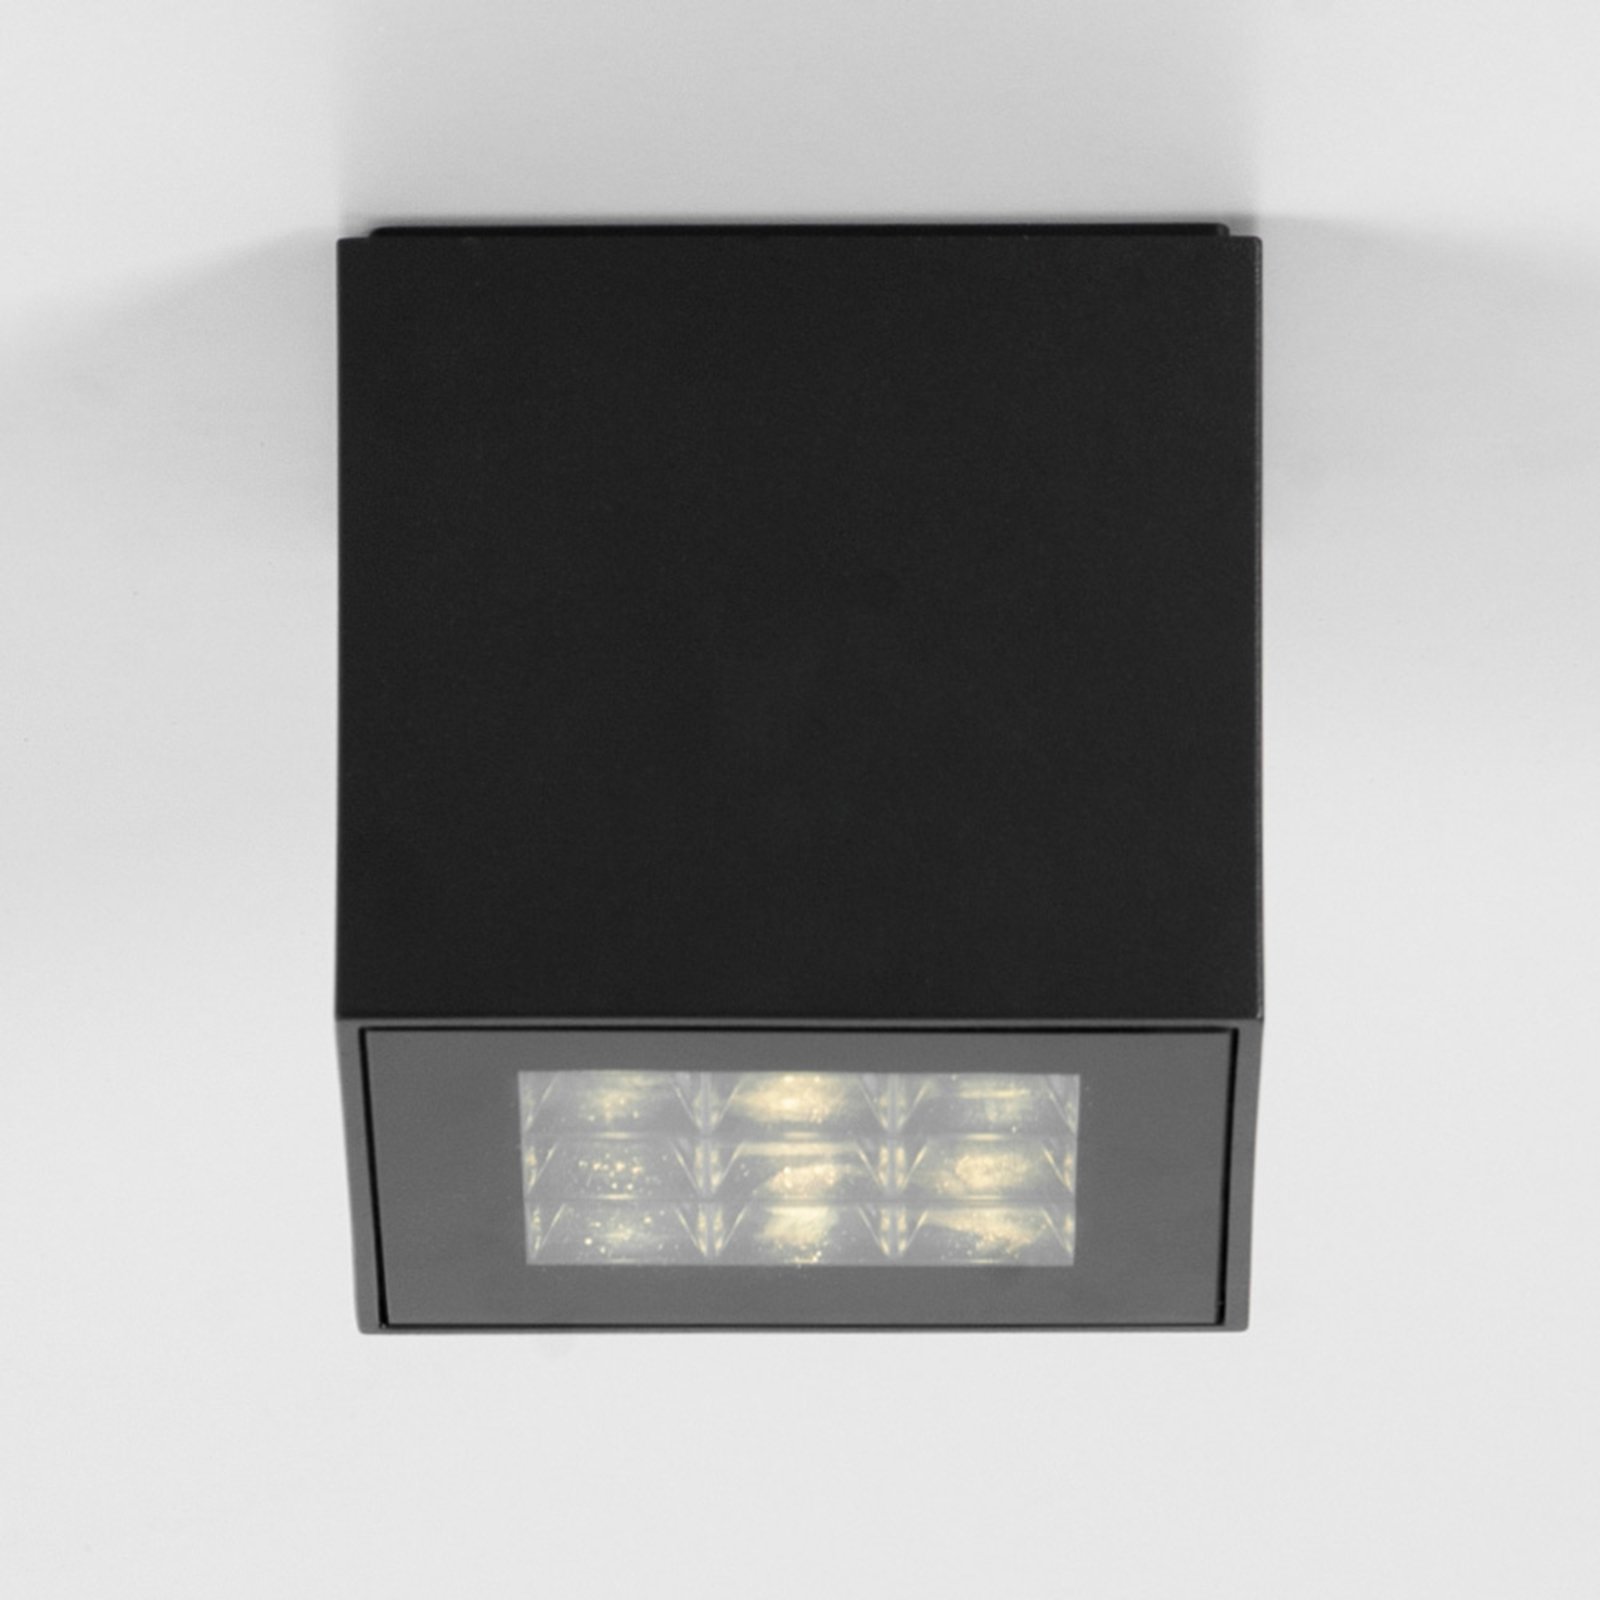 BRUMBERG Blokk plafonnier LED, 11 x 11 cm